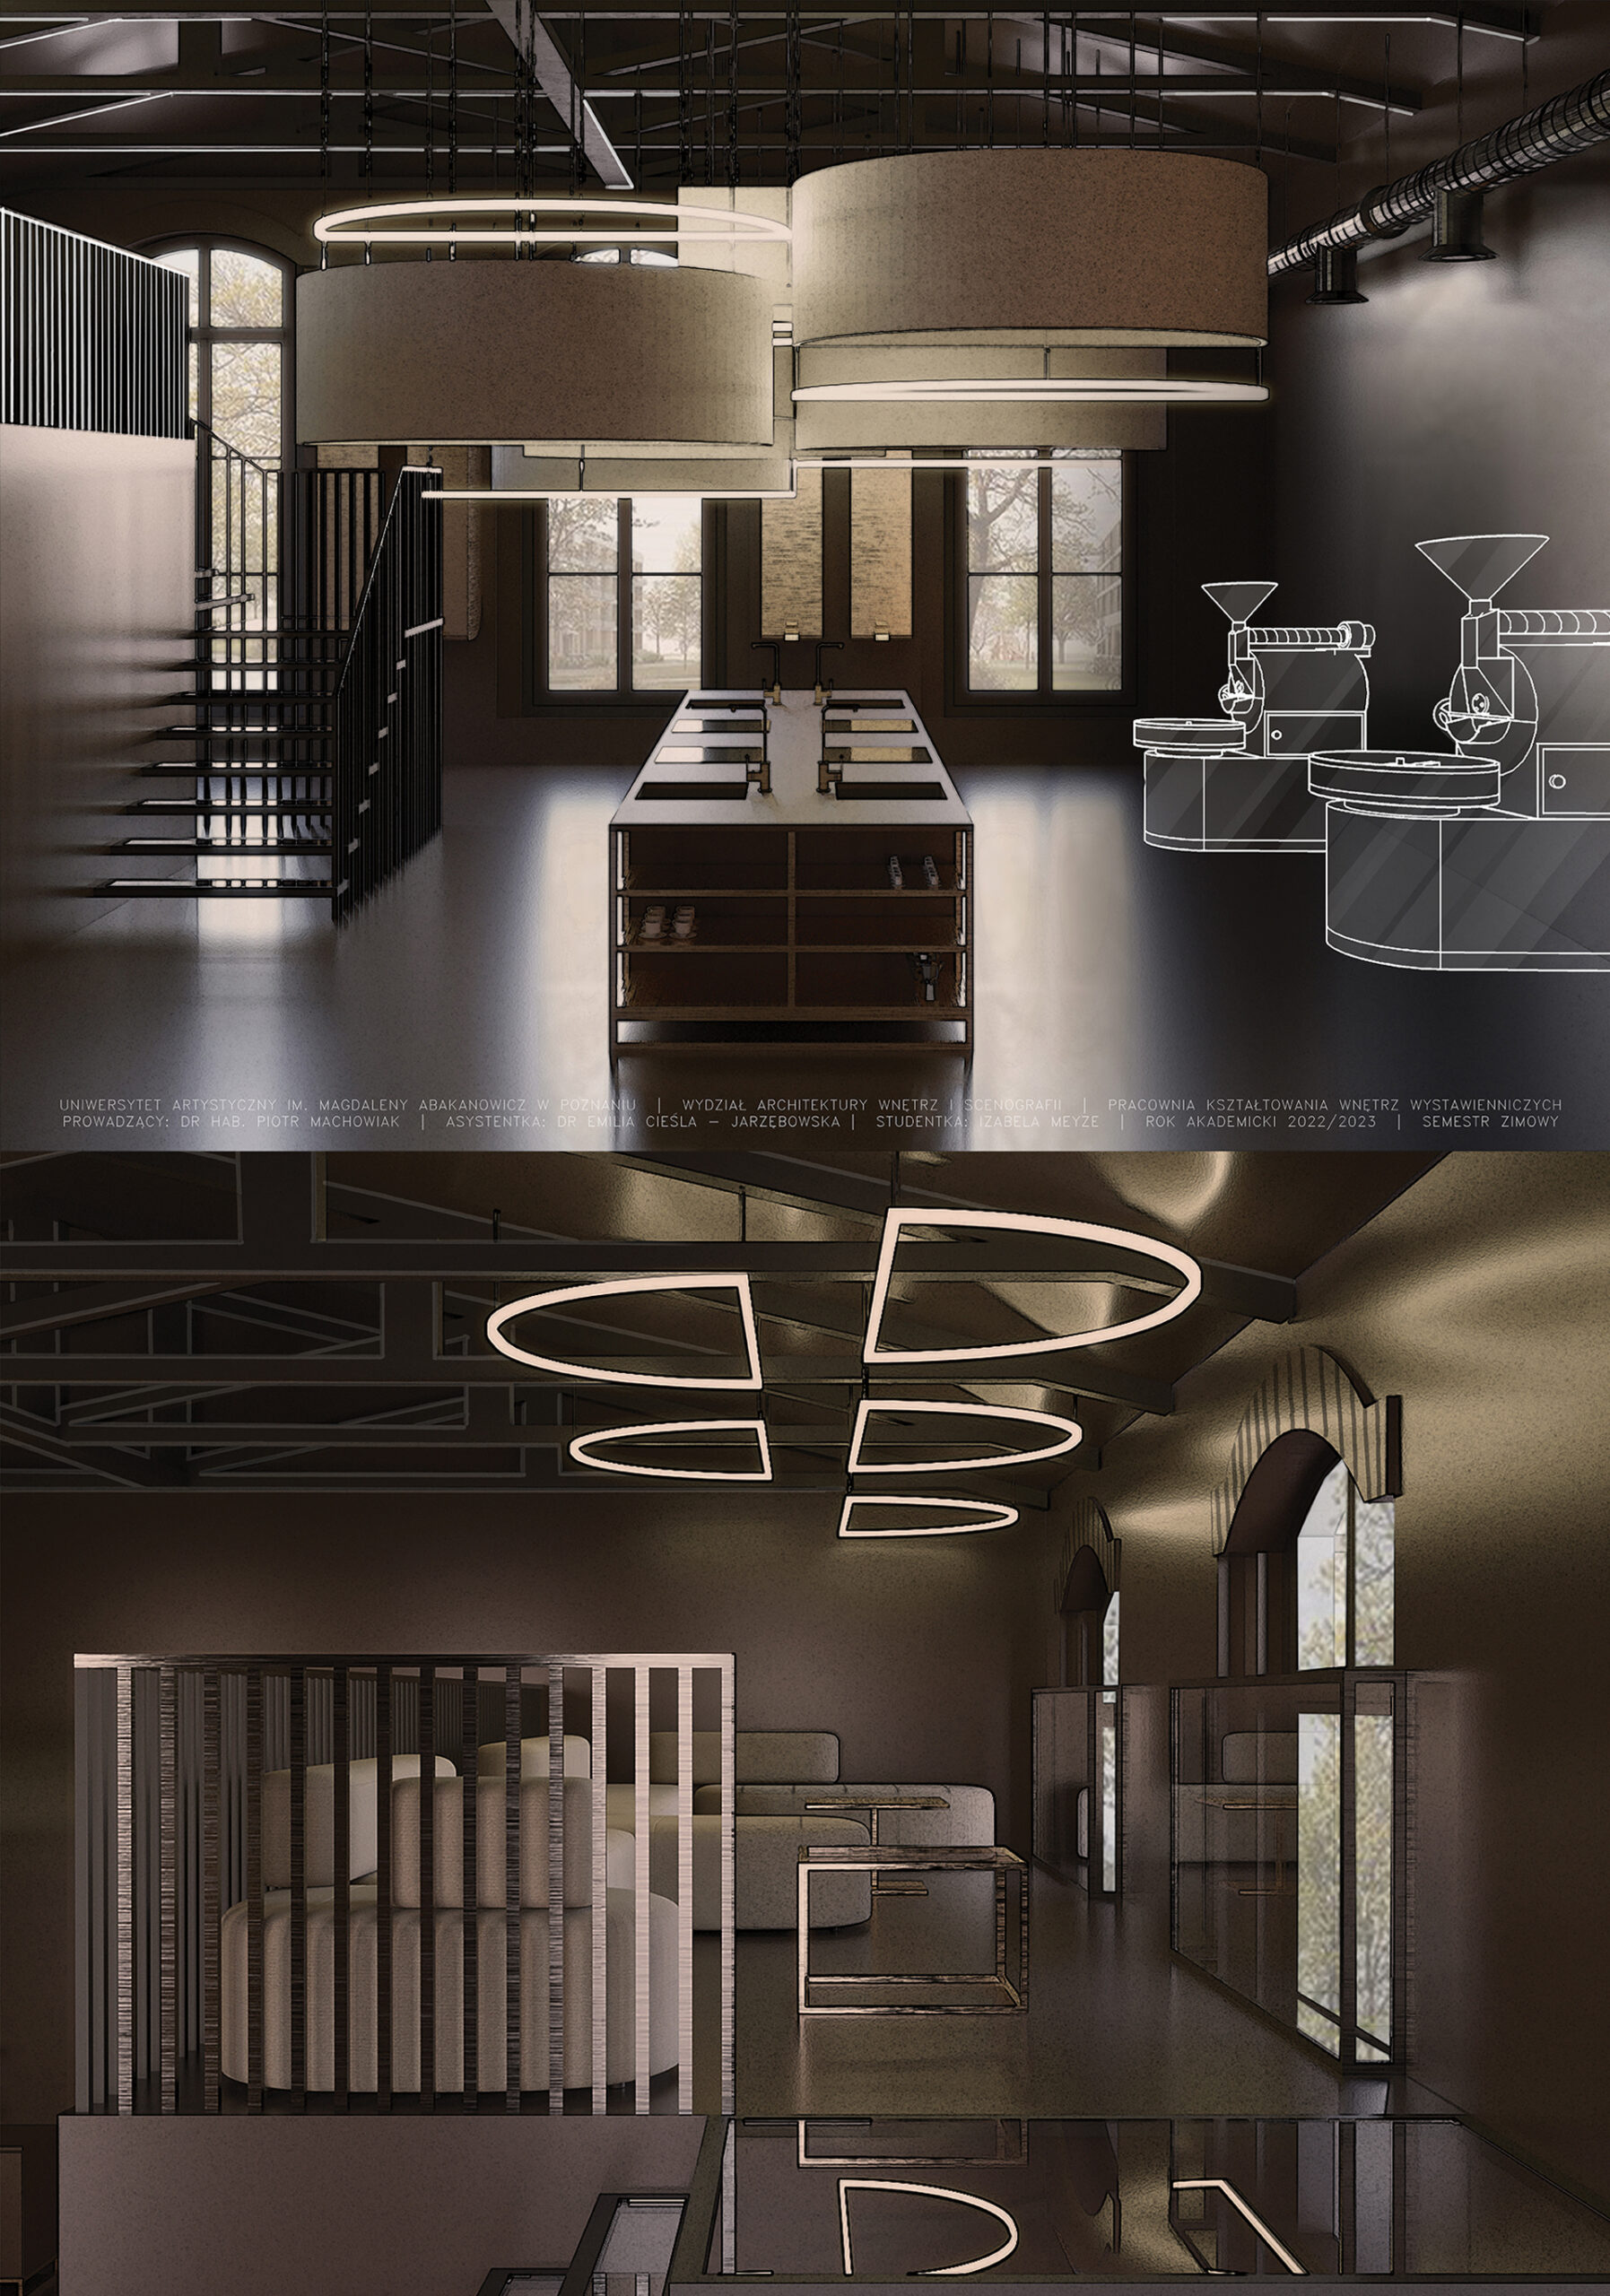 Plansza ukazuje dwie wizualizacje, od góry widok na przestrzeń warsztatową kawiarnii, poniżej zaprojektowana przestrzeń antresoli ze strefą relaksu i konsumpcji.